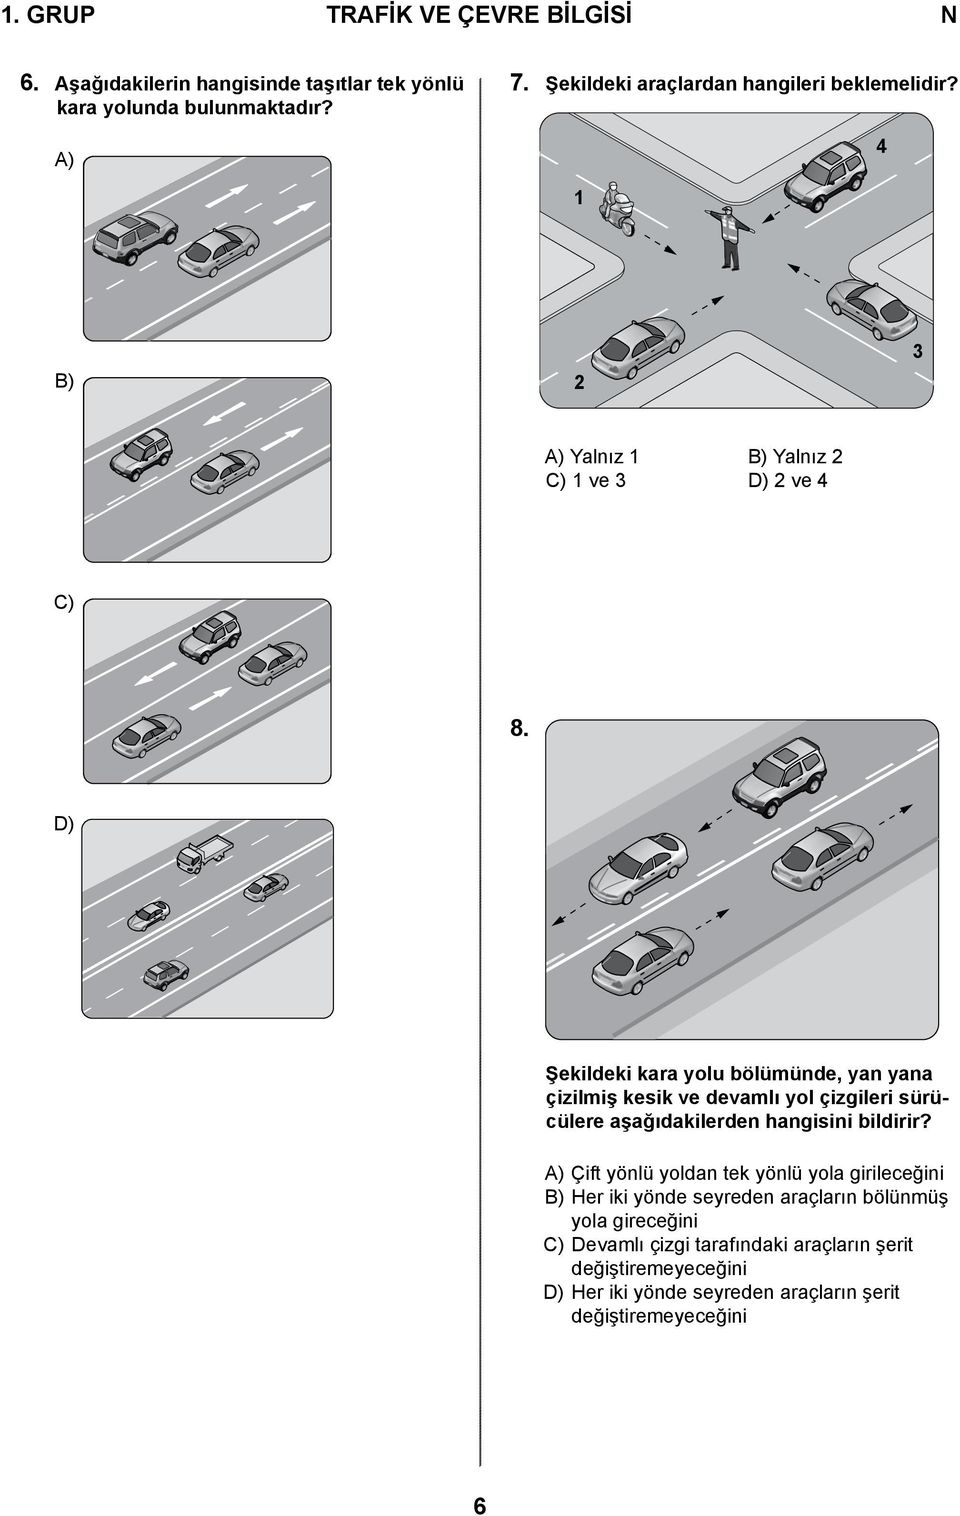 D) Şekildeki kara yolu bölümünde, yan yana çizilmiş kesik ve devamlı yol çizgileri sürücülere aşağıdakilerden hangisini bildirir?